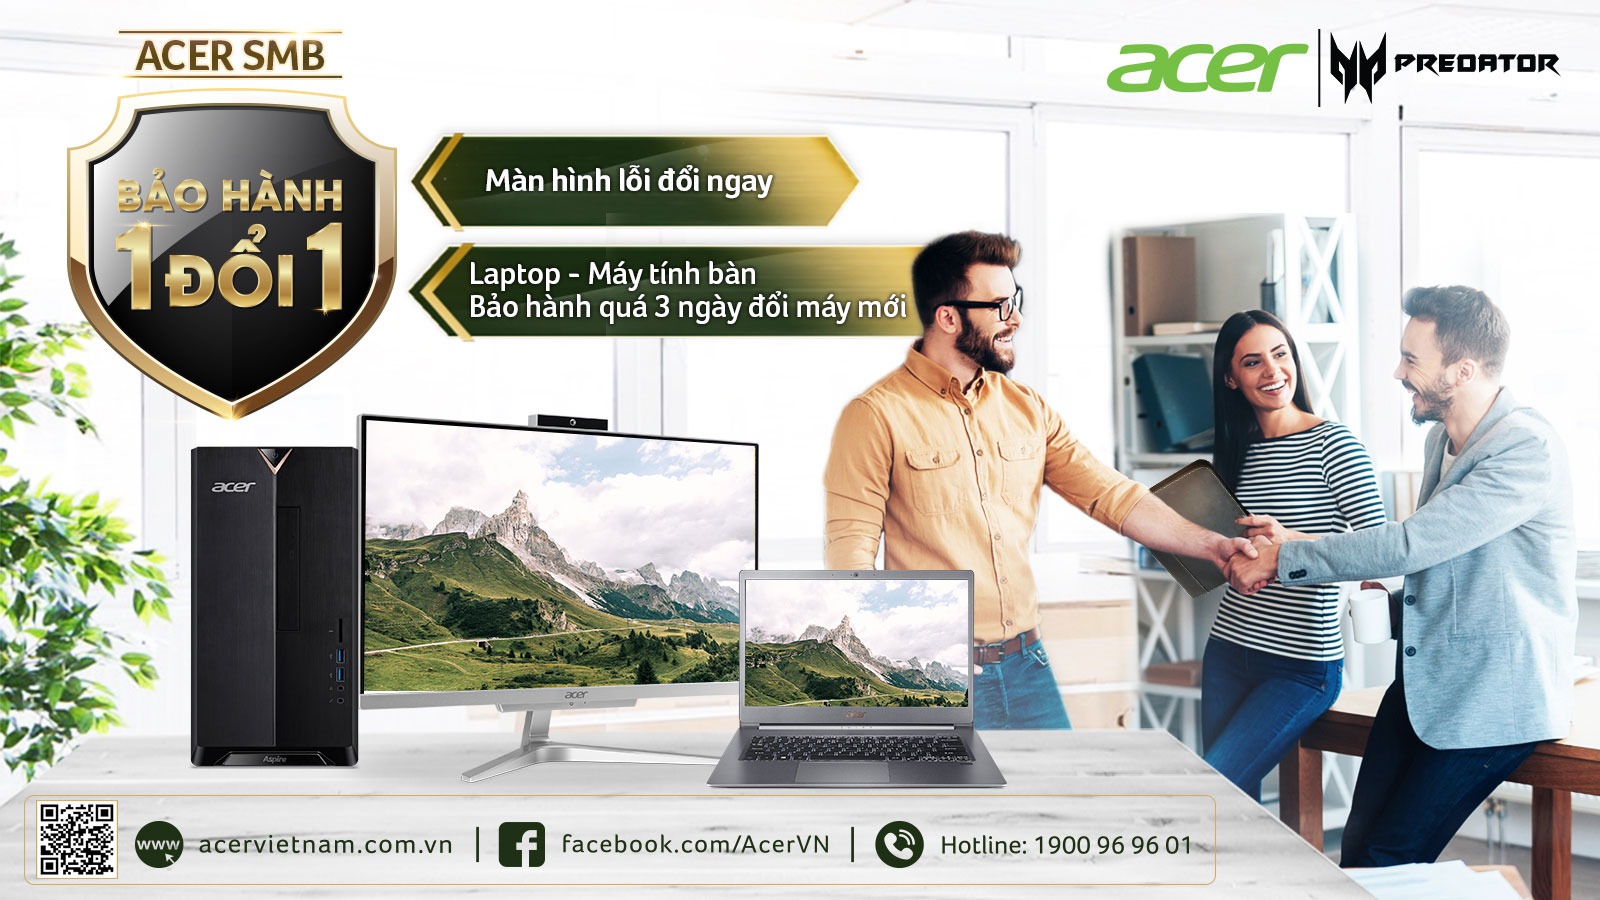 Acer Việt Nam ra mắt dịch vụ ưu đãi dành cho khách hàng doanh nghiệp nhỏ và vừa (SMB)